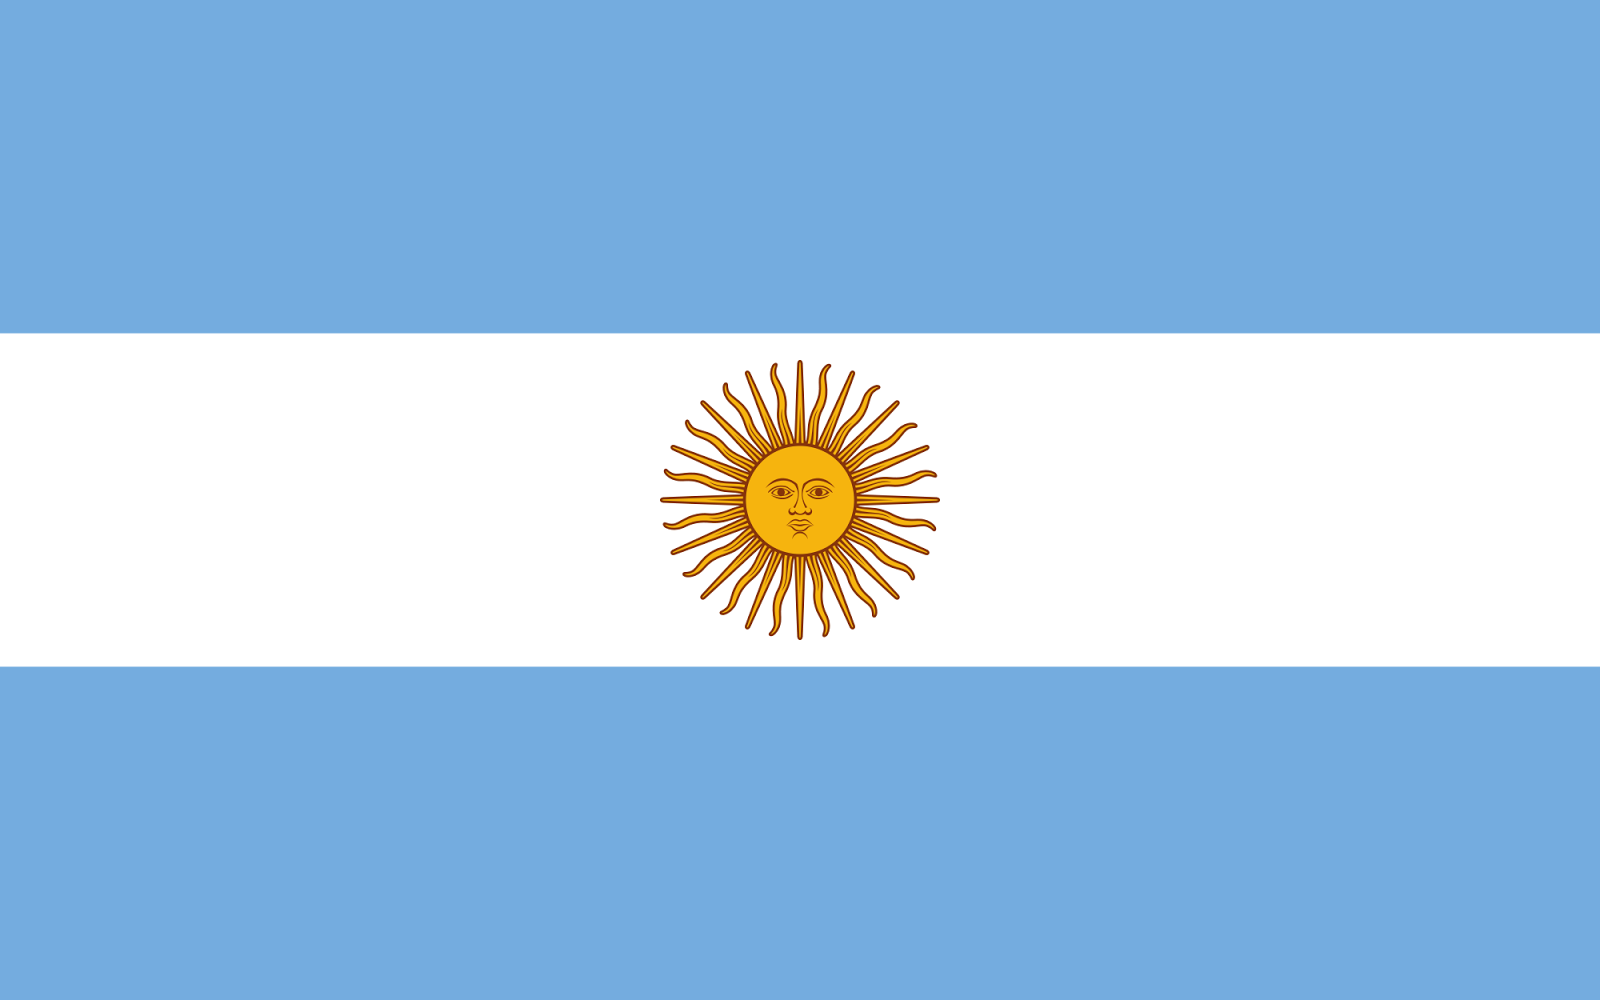 Argentina!